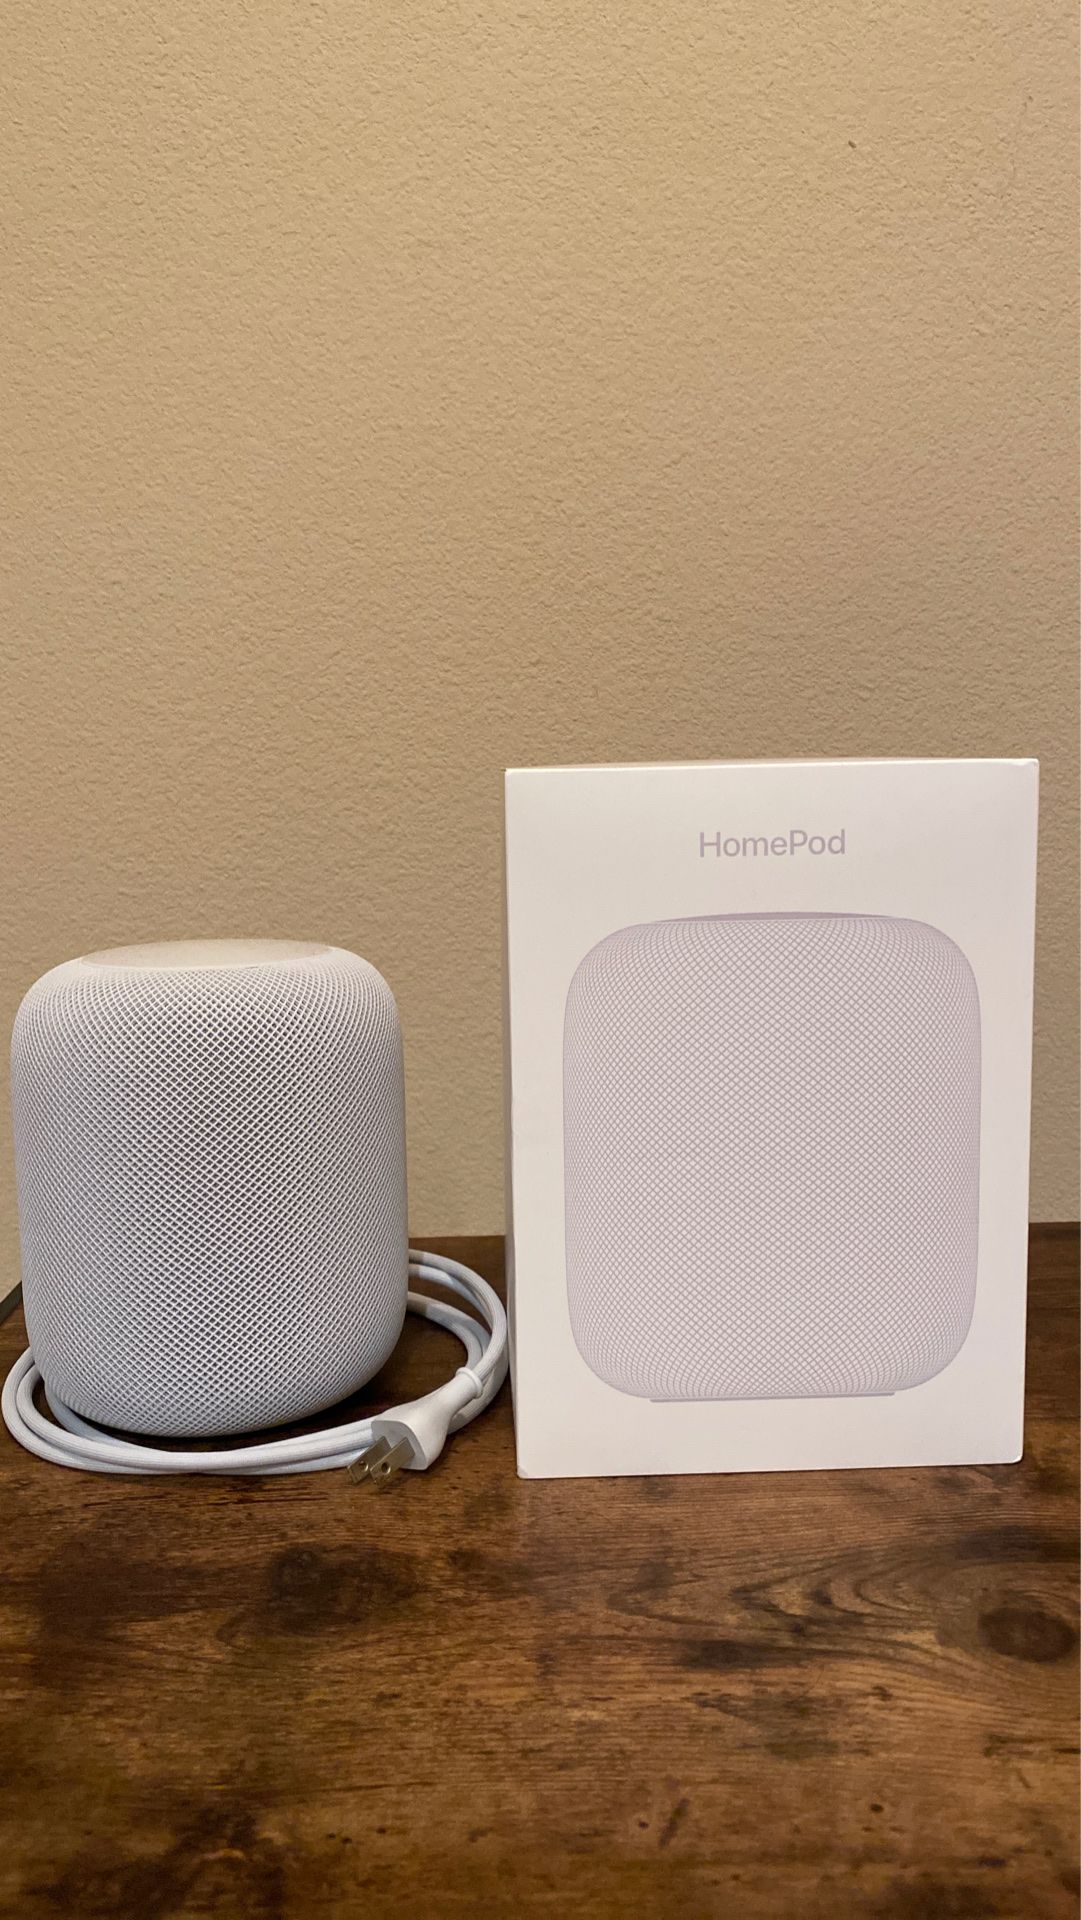 Apple Homepod Smartspeaker